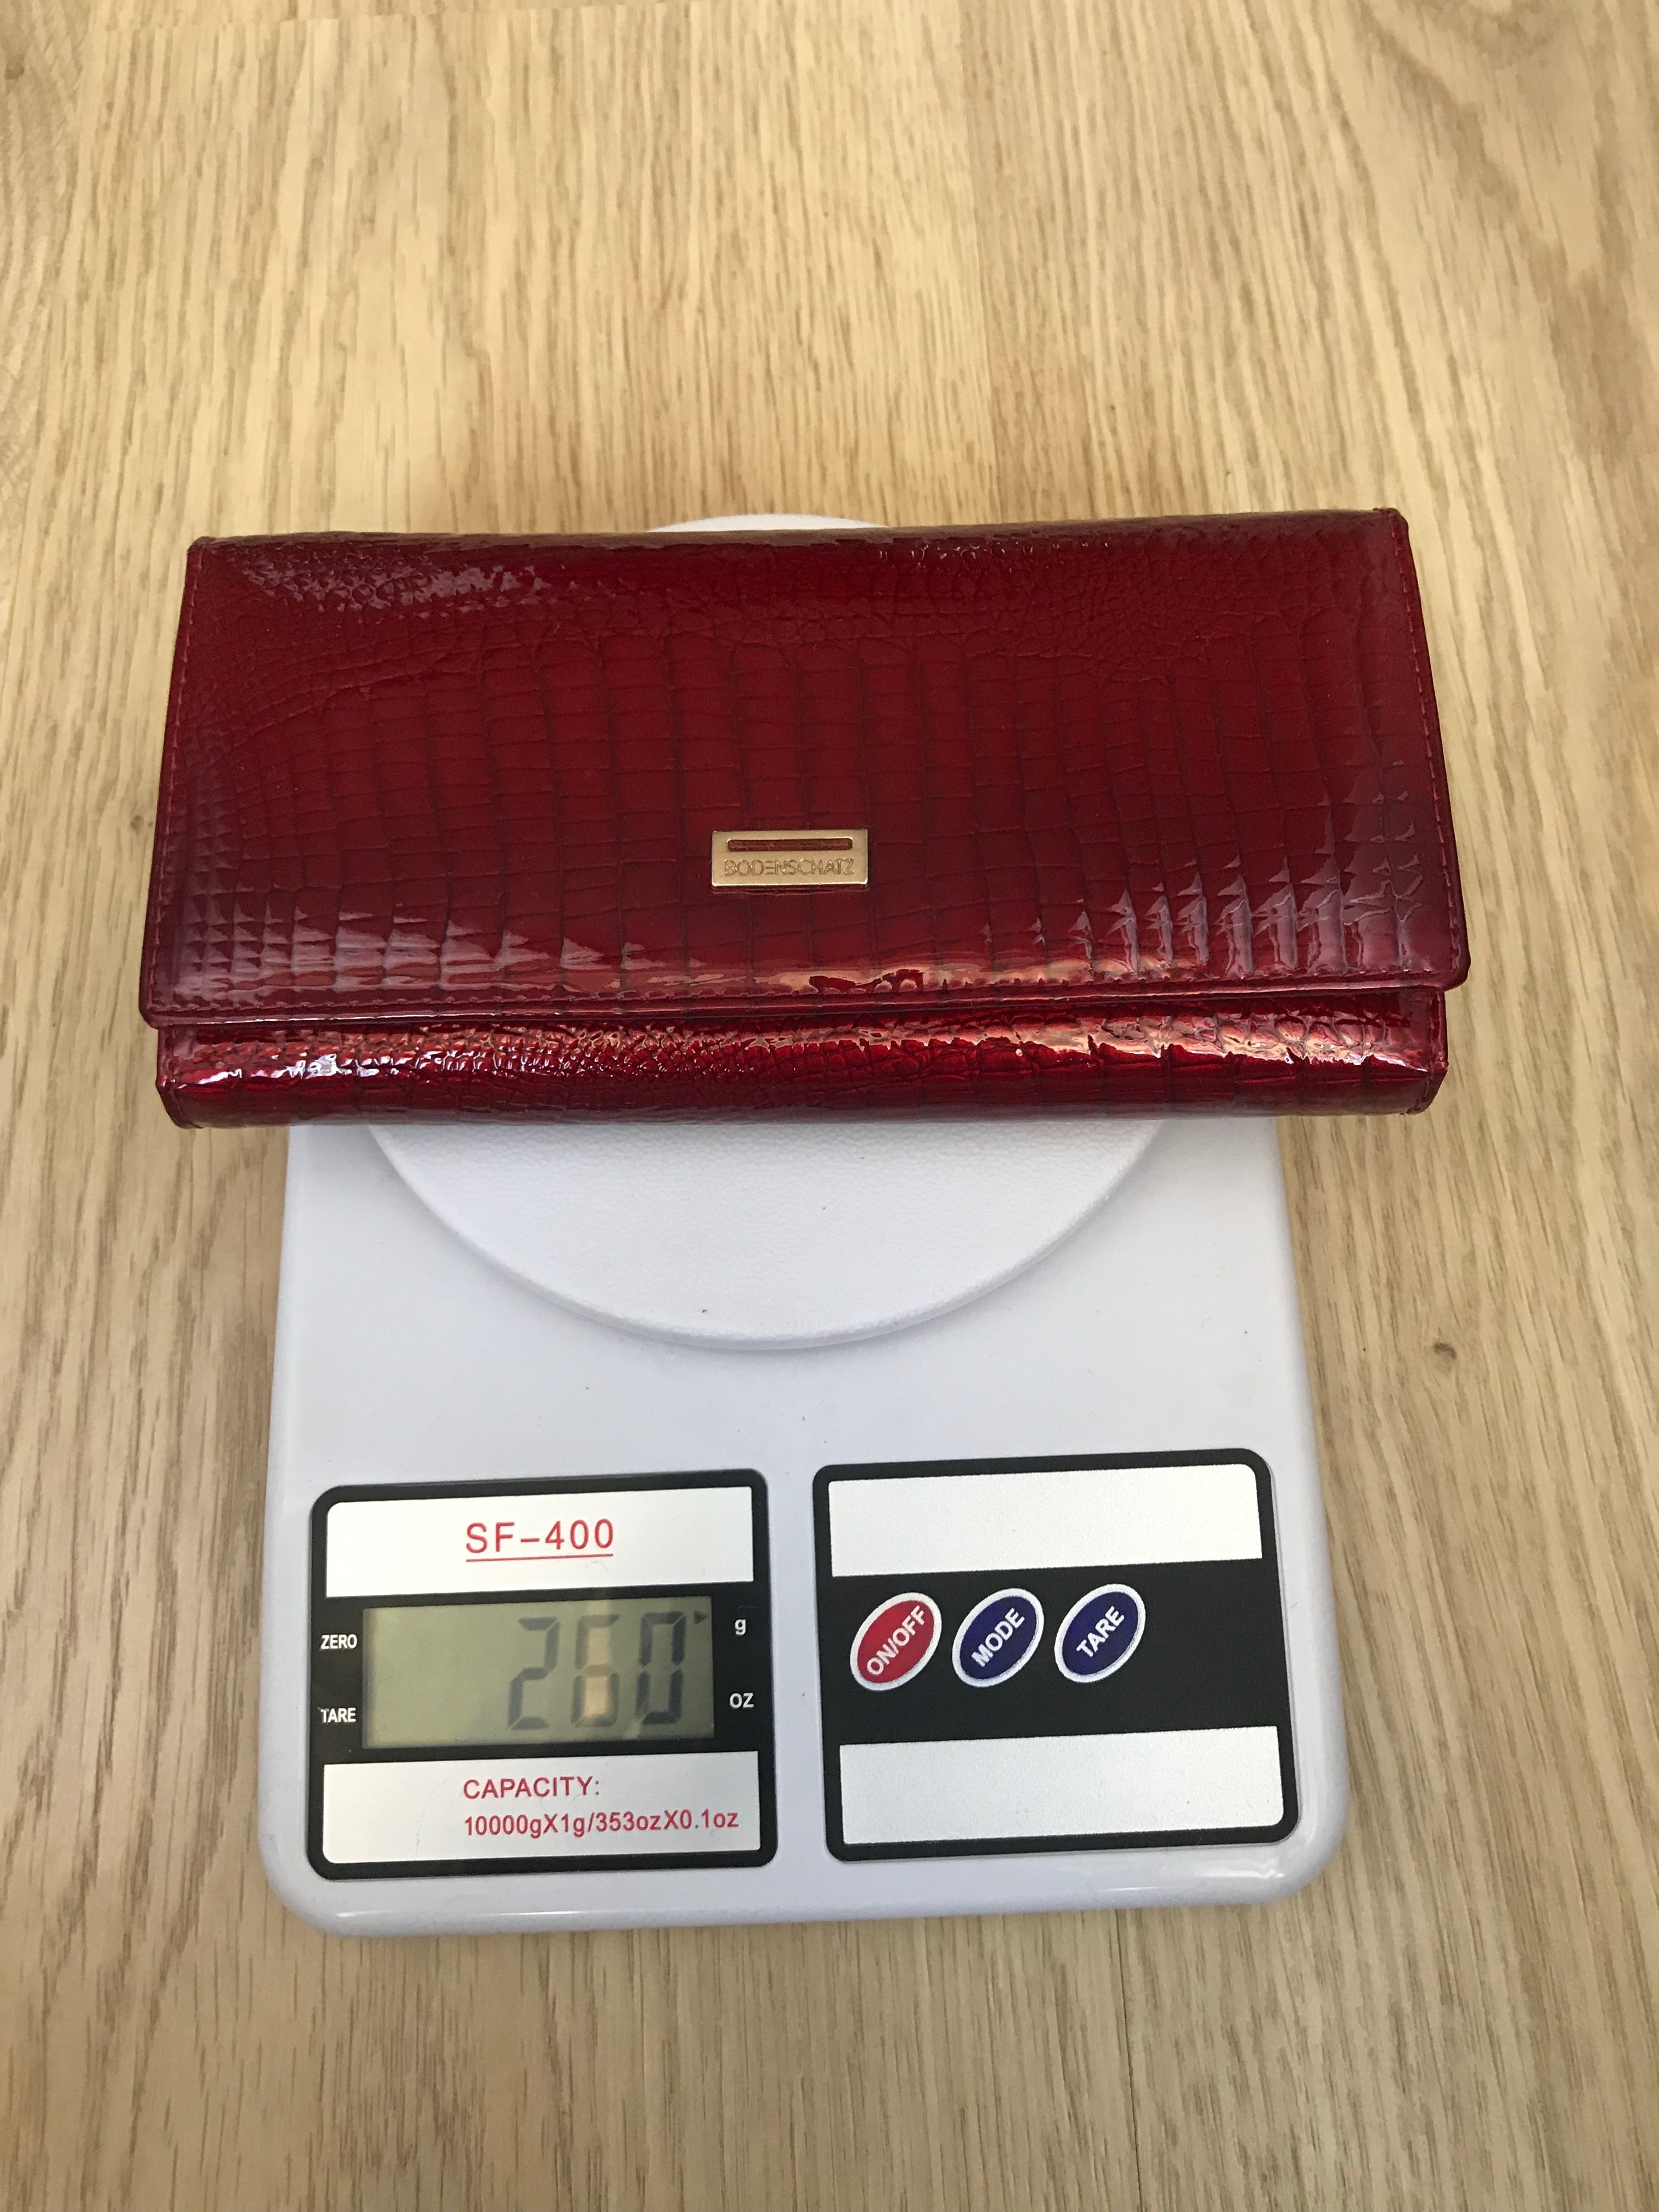 Berapa berat dompet ini?